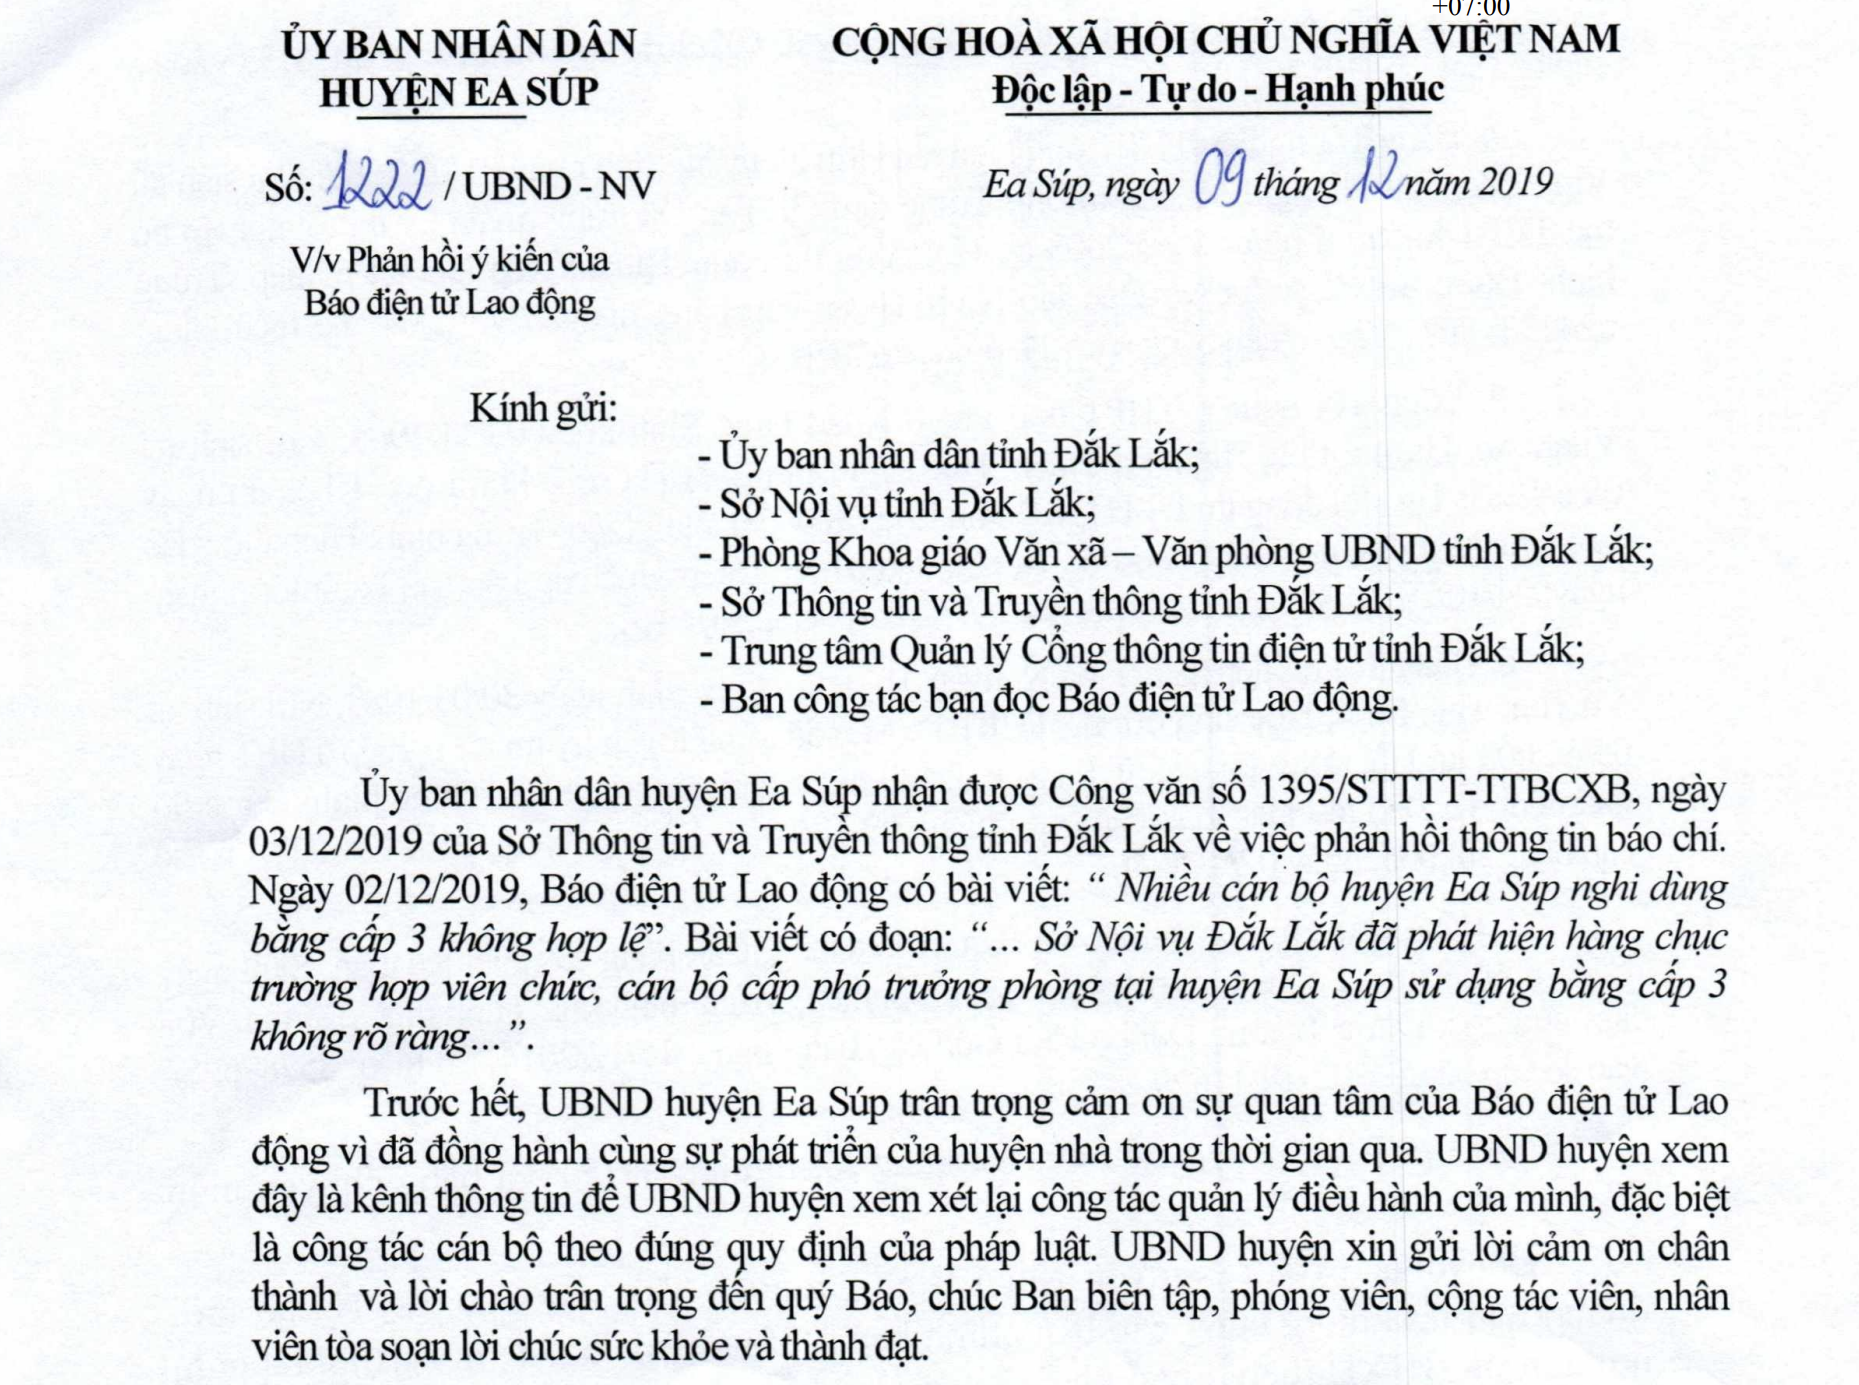 Công văn phản hồi bài viết của Báo Lao Động của huyện Ea Súp.